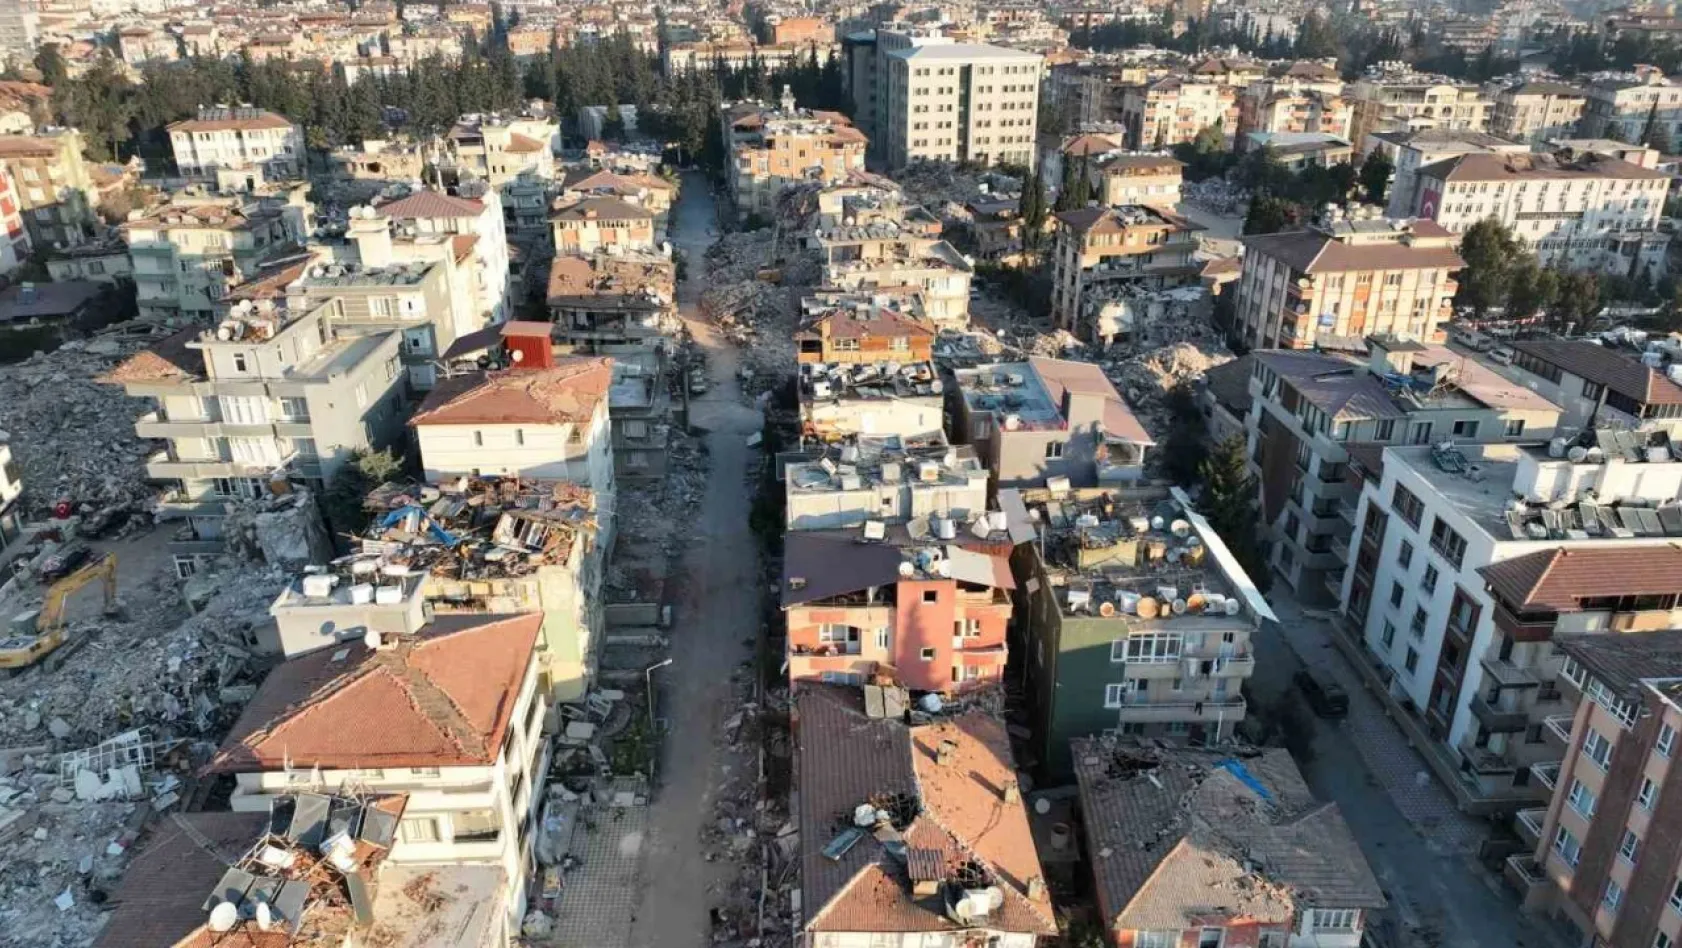 Zorunlu deprem sigortası poliçesinde artış